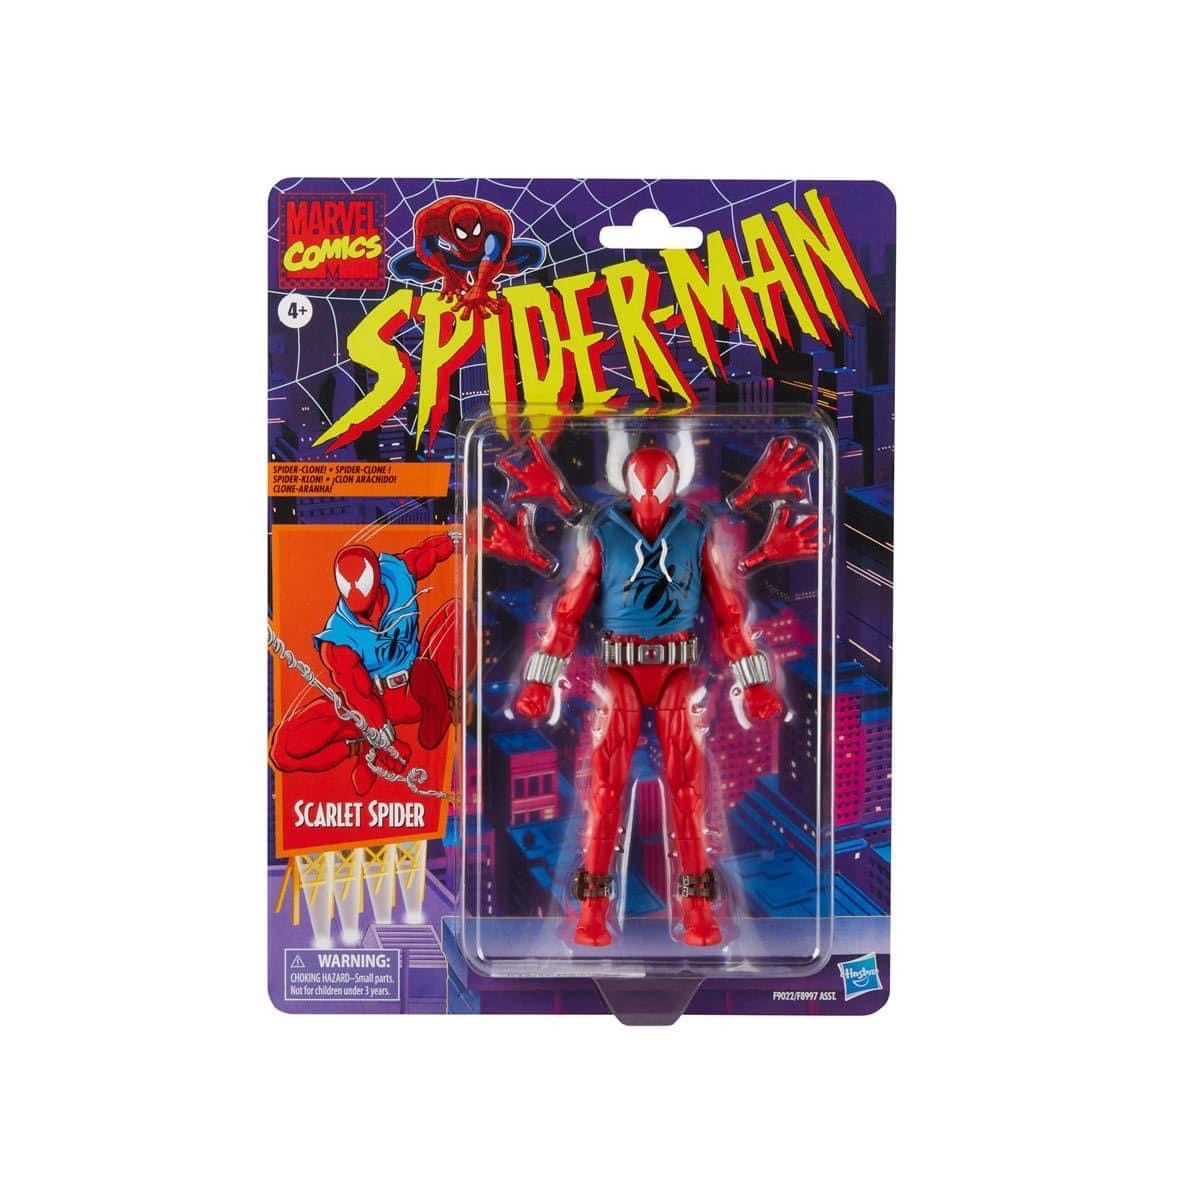 Scarlet spider Spiderman Wave retro